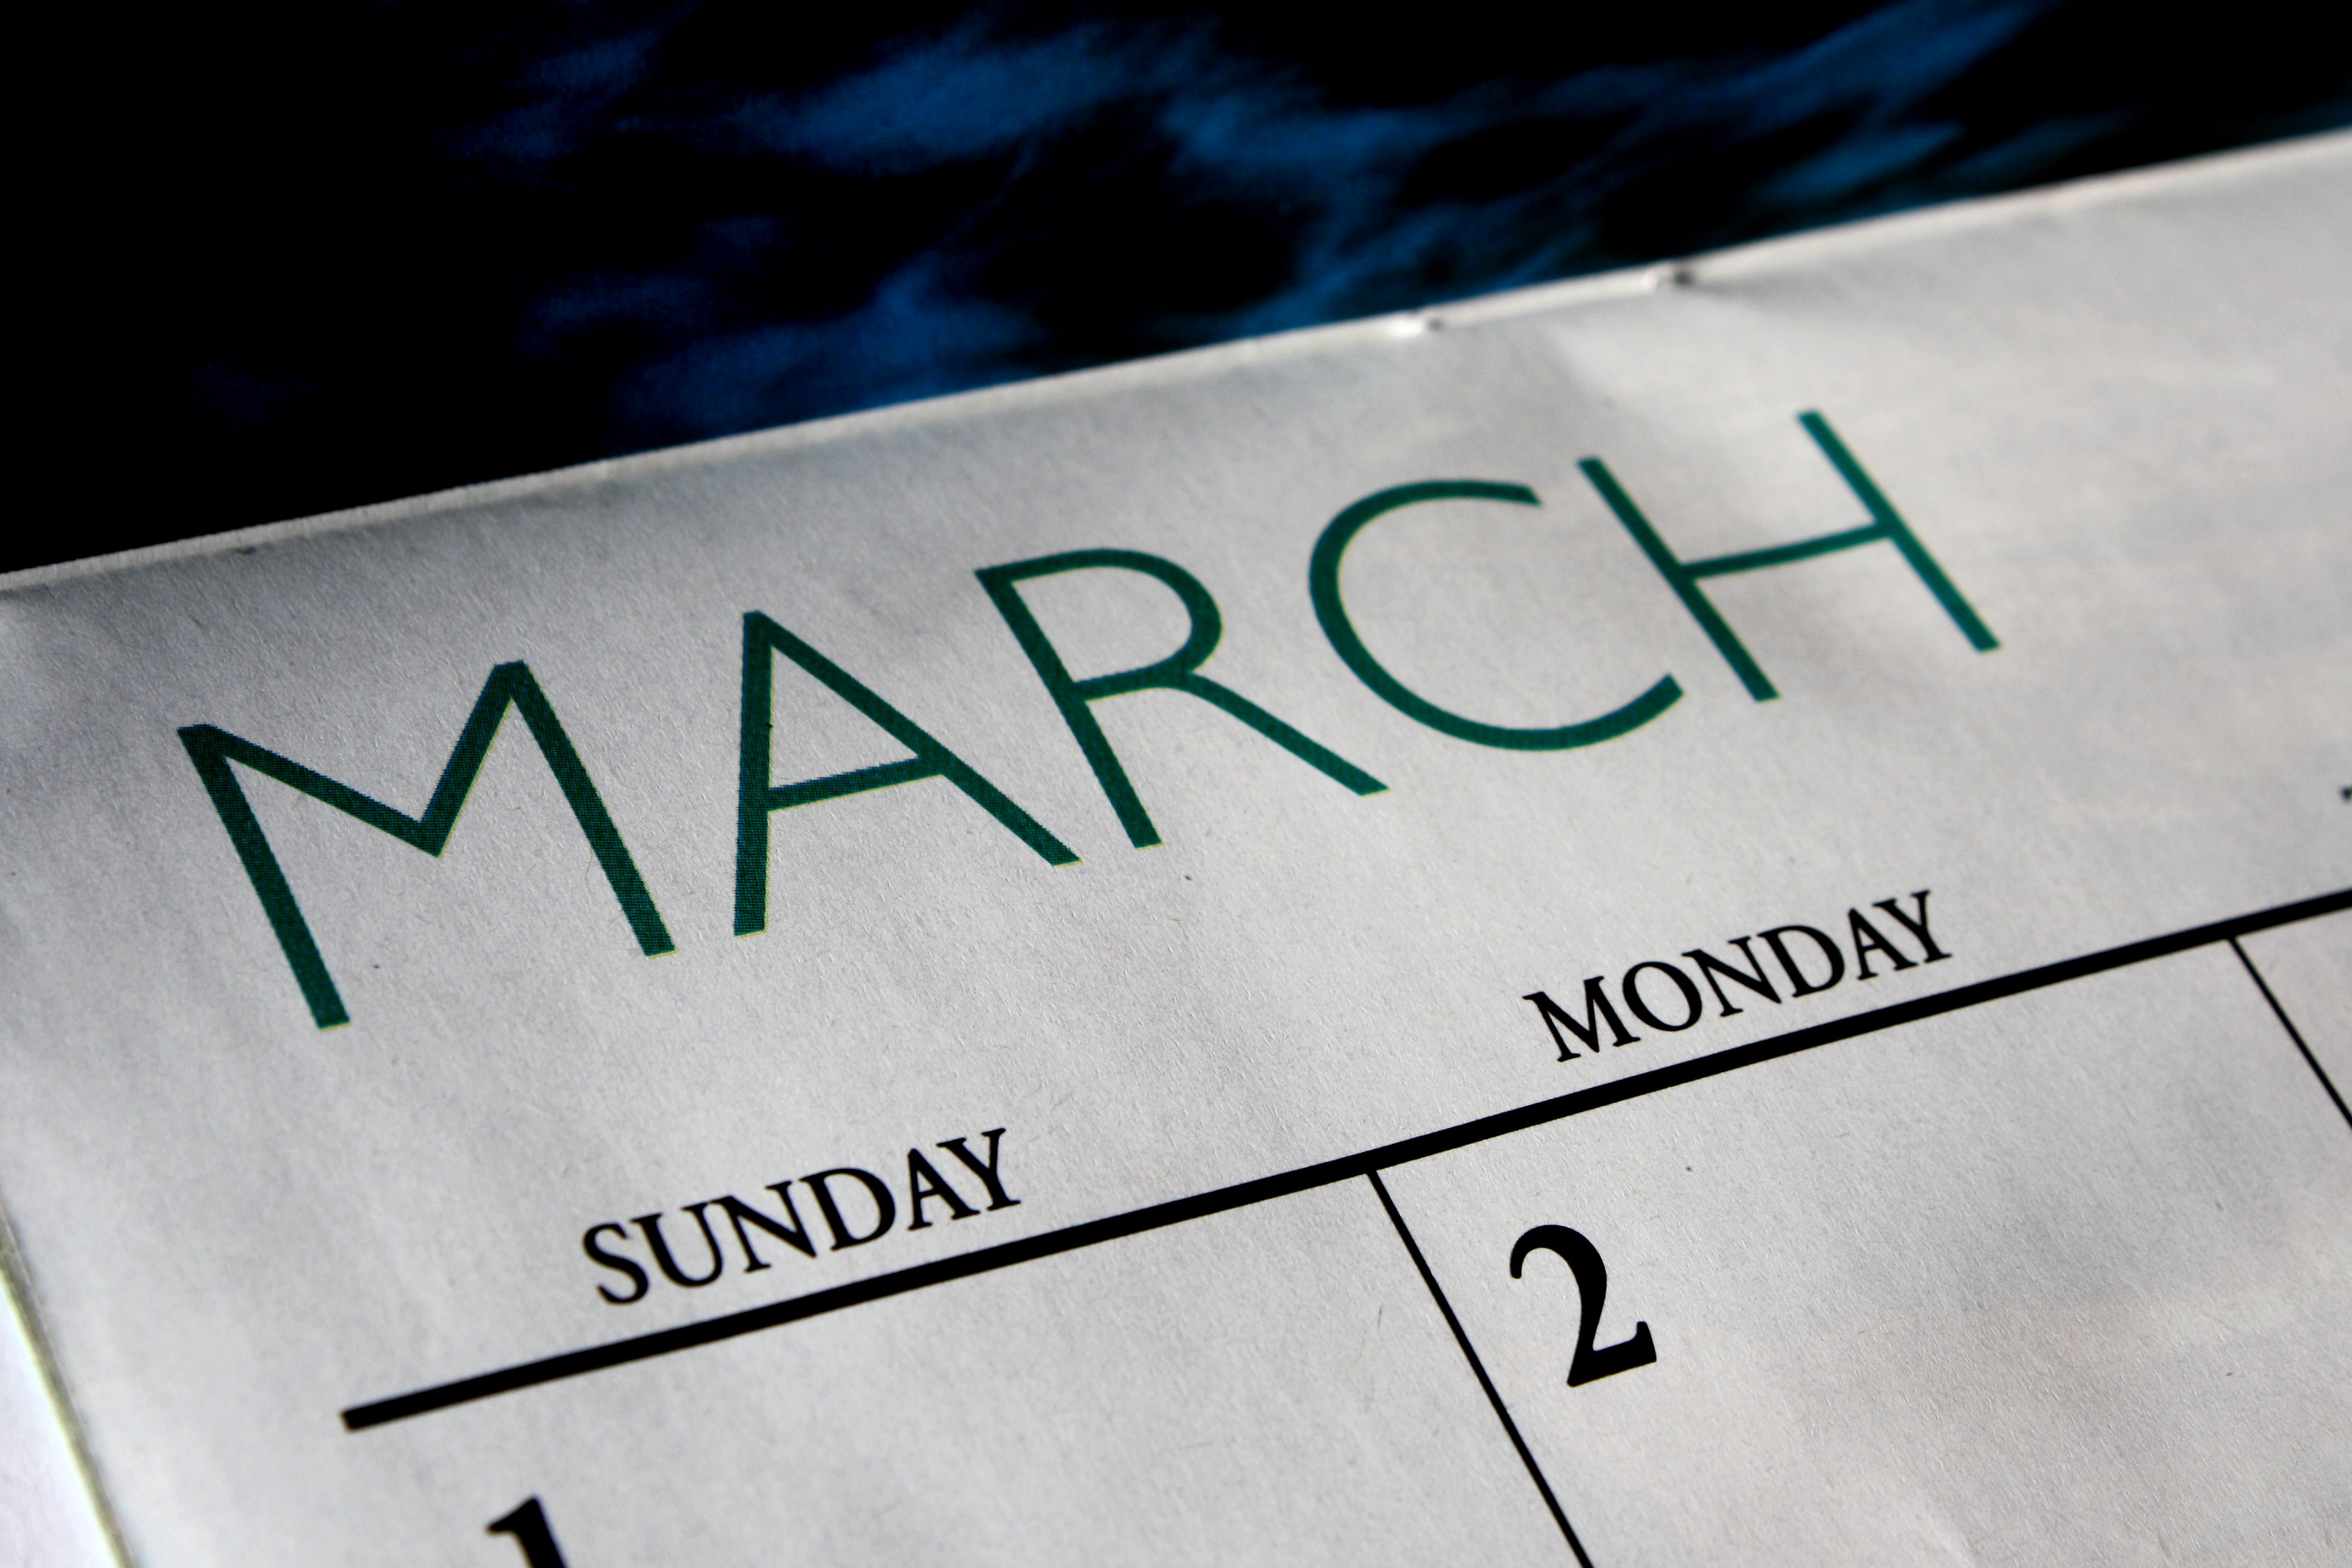 March Calendar Picture Free Photograph Photos Public Domain